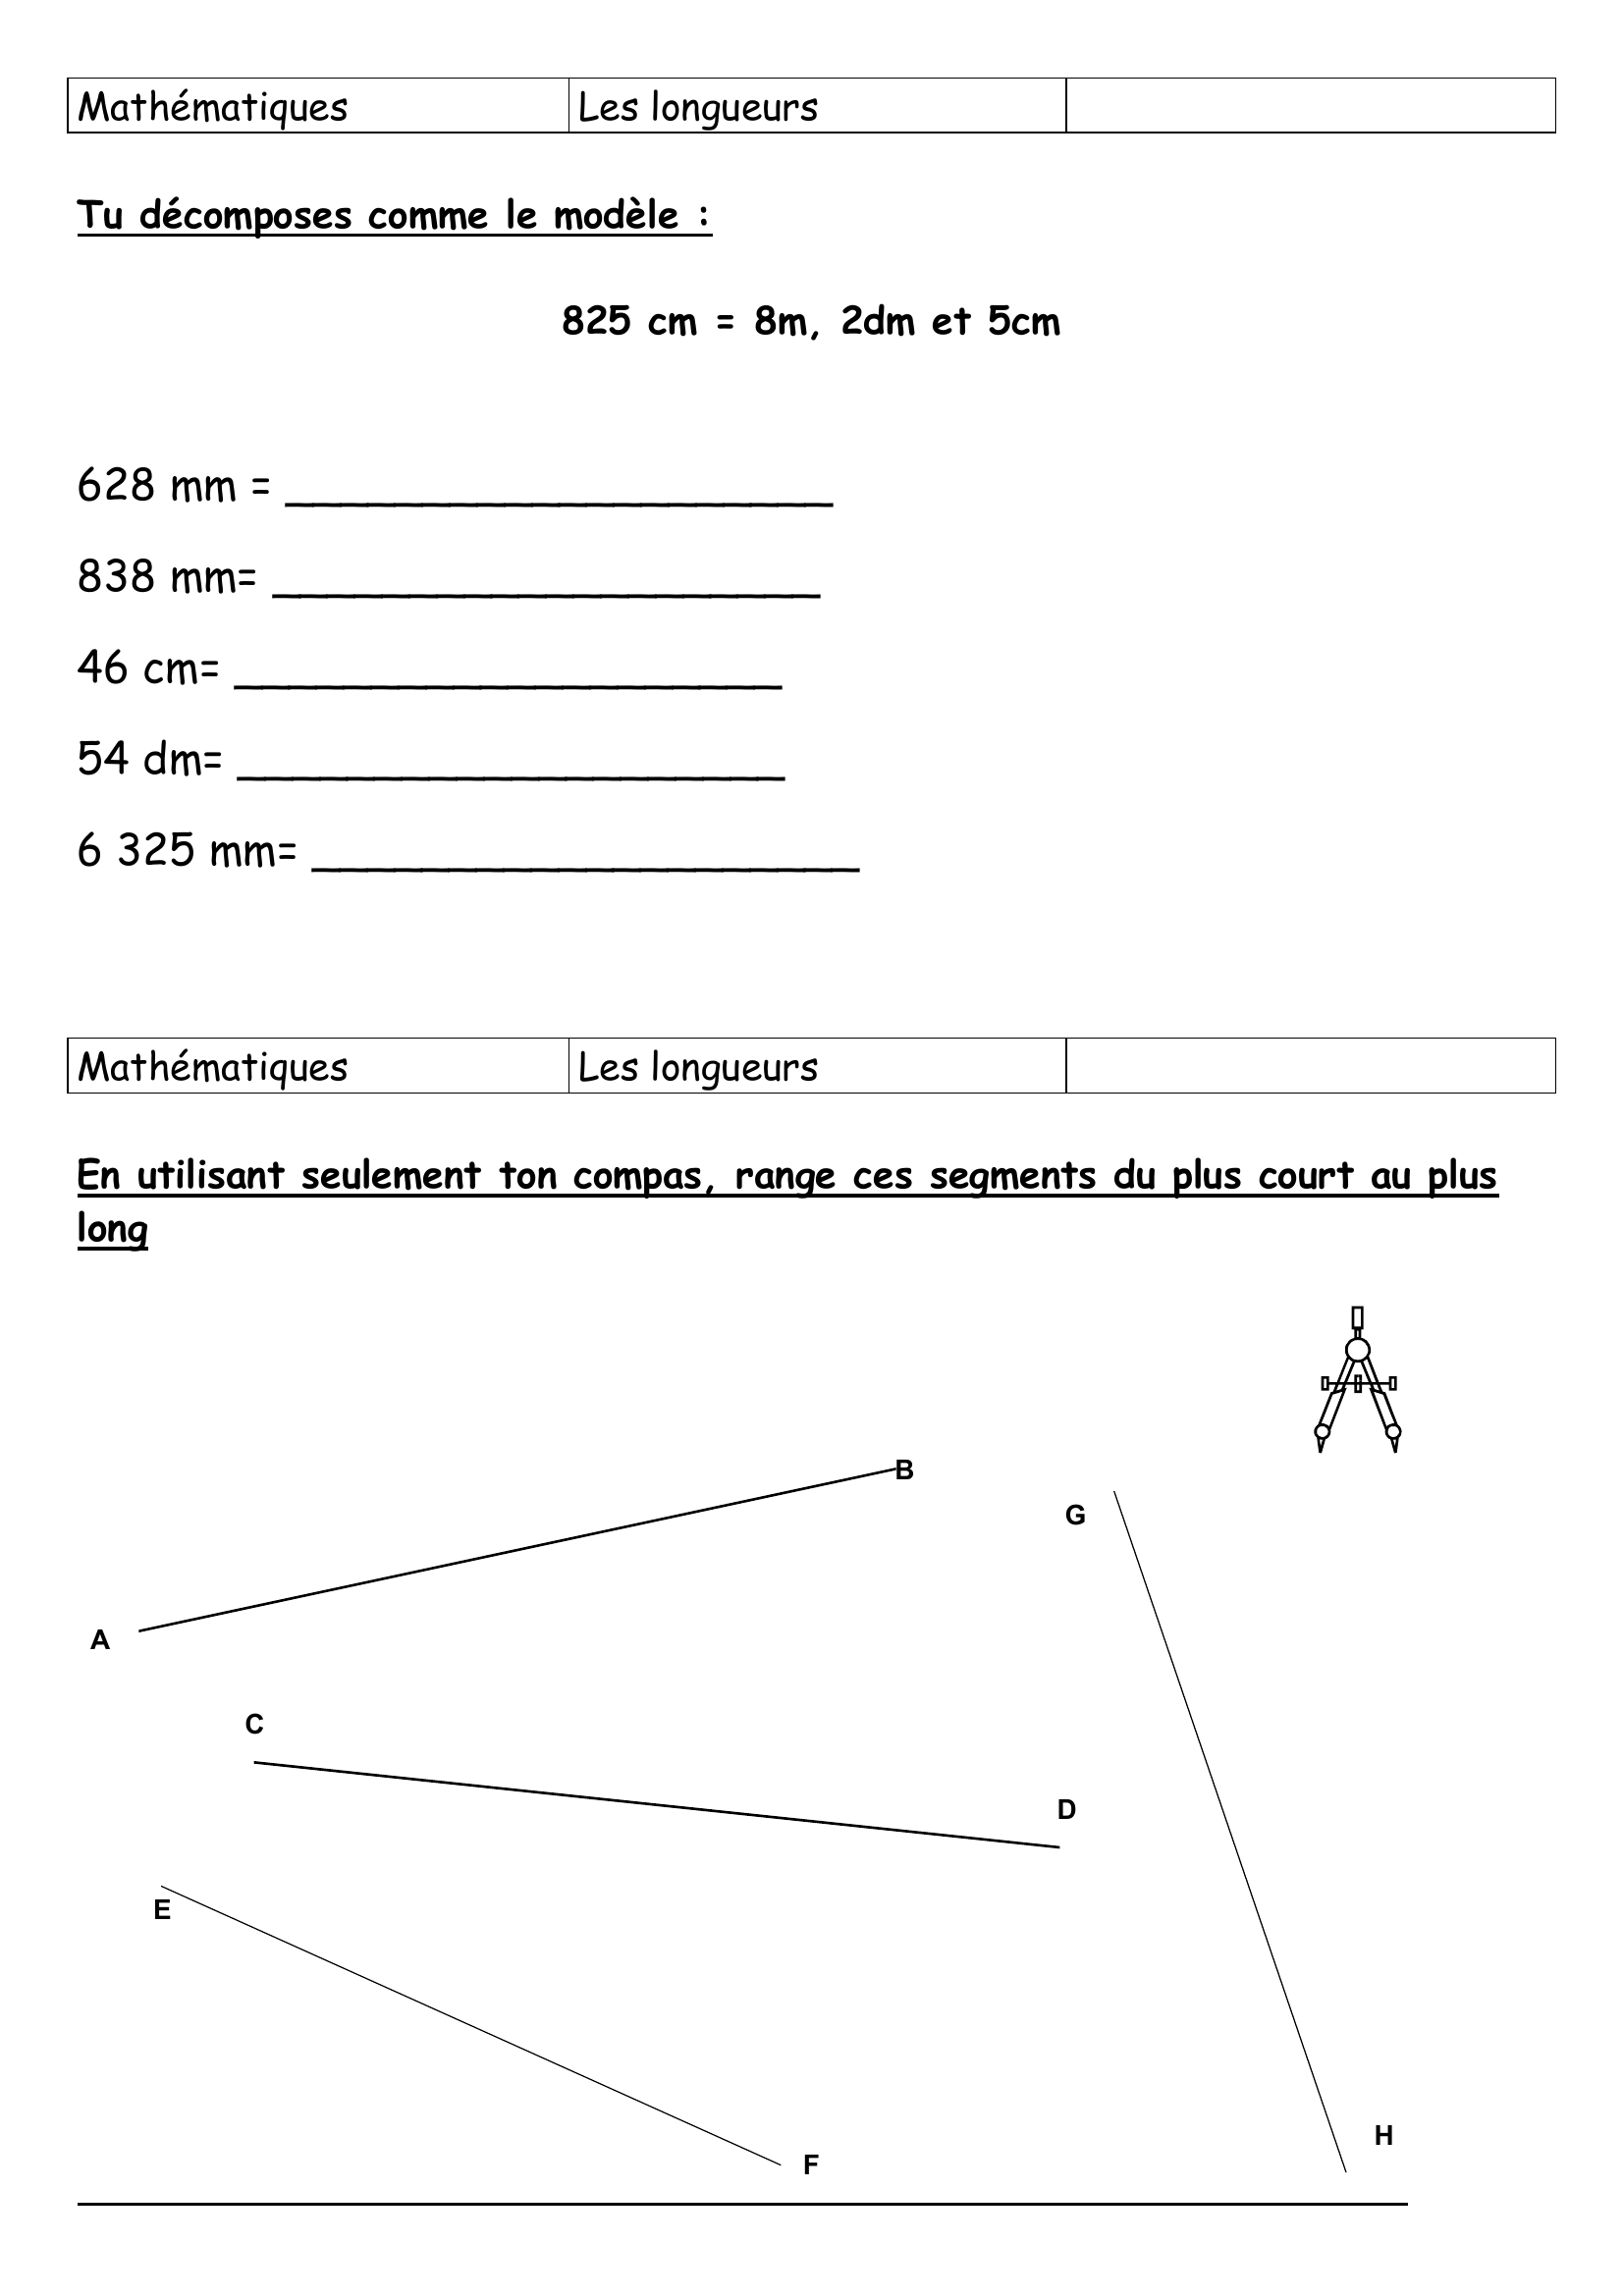 Prévisualisation du document Mathématiques

Les longueurs

Tu écris les longueurs suivantes en mètres :

2km 9hm